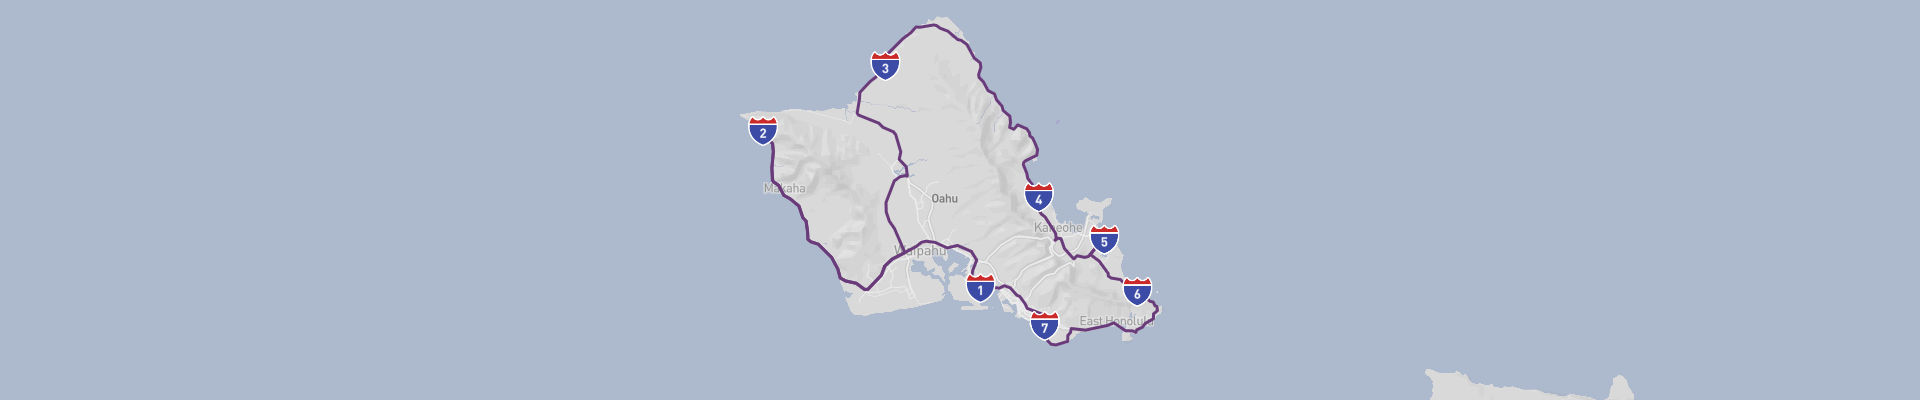 Itinéraire Hawaii Oahu 